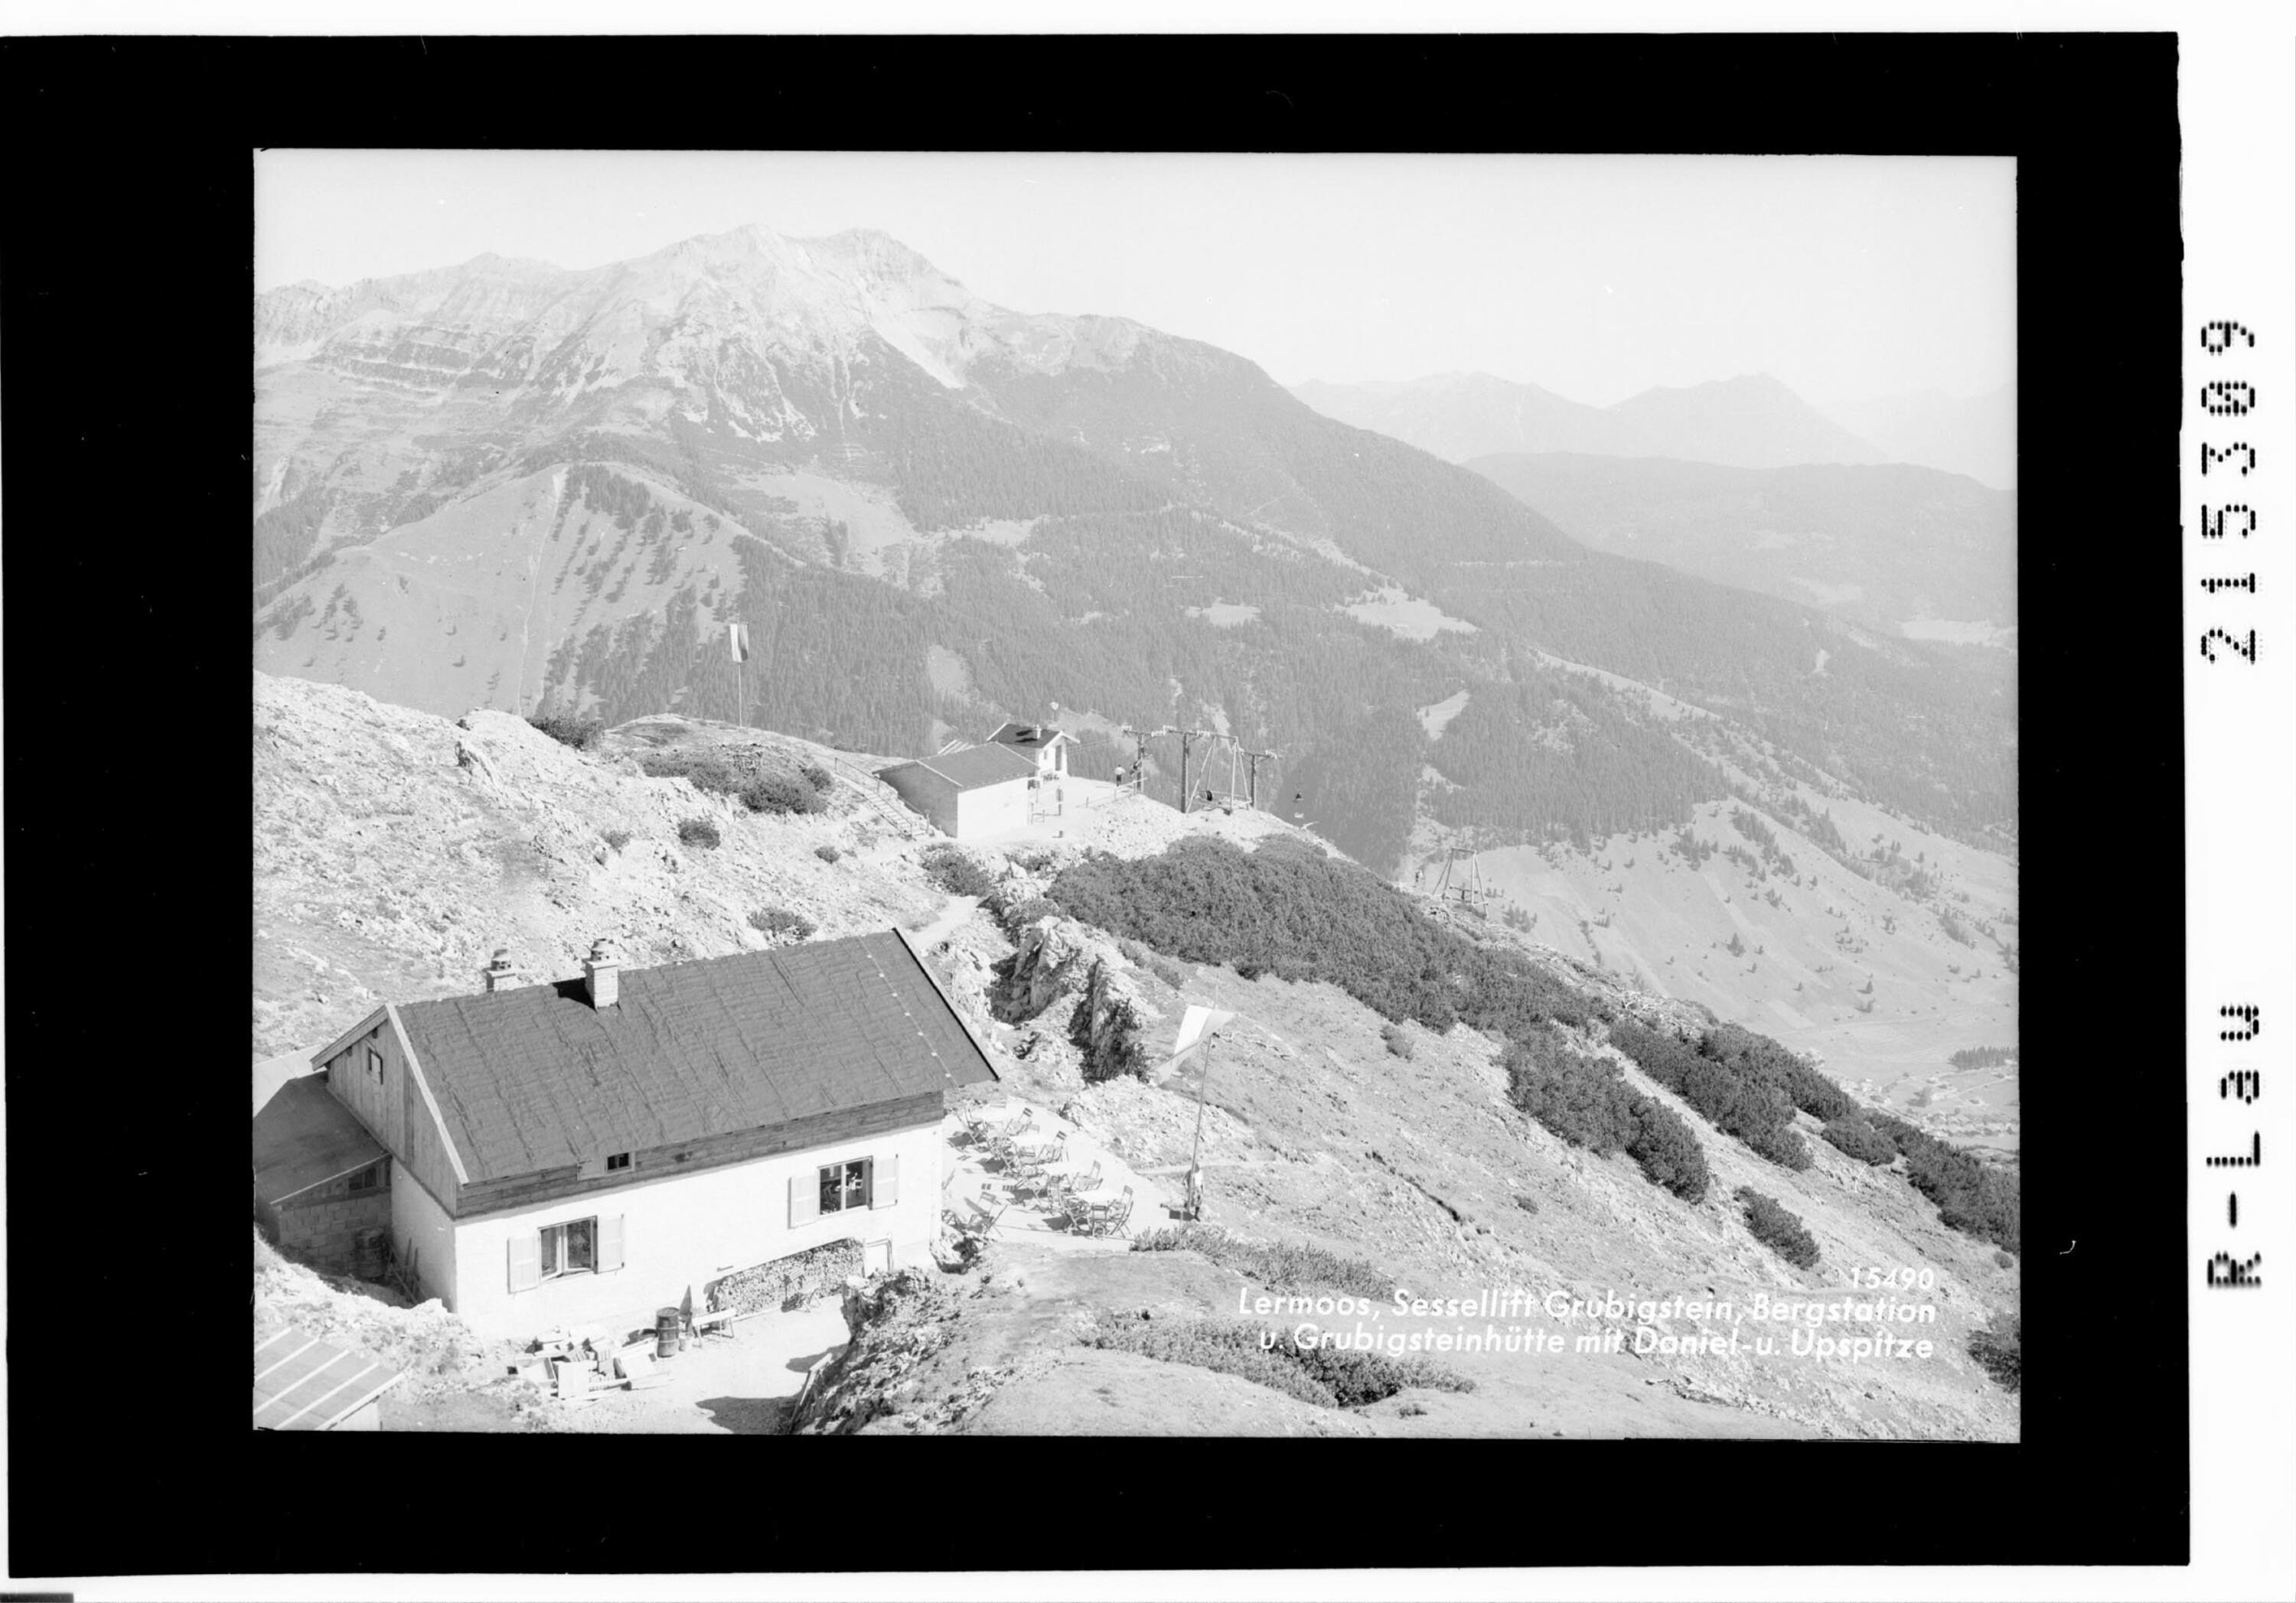 Lermoos, Sessellift Grubigstein, Bergstation und Grubigsteinhütte mit Daniel und Upsspitze></div>


    <hr>
    <div class=